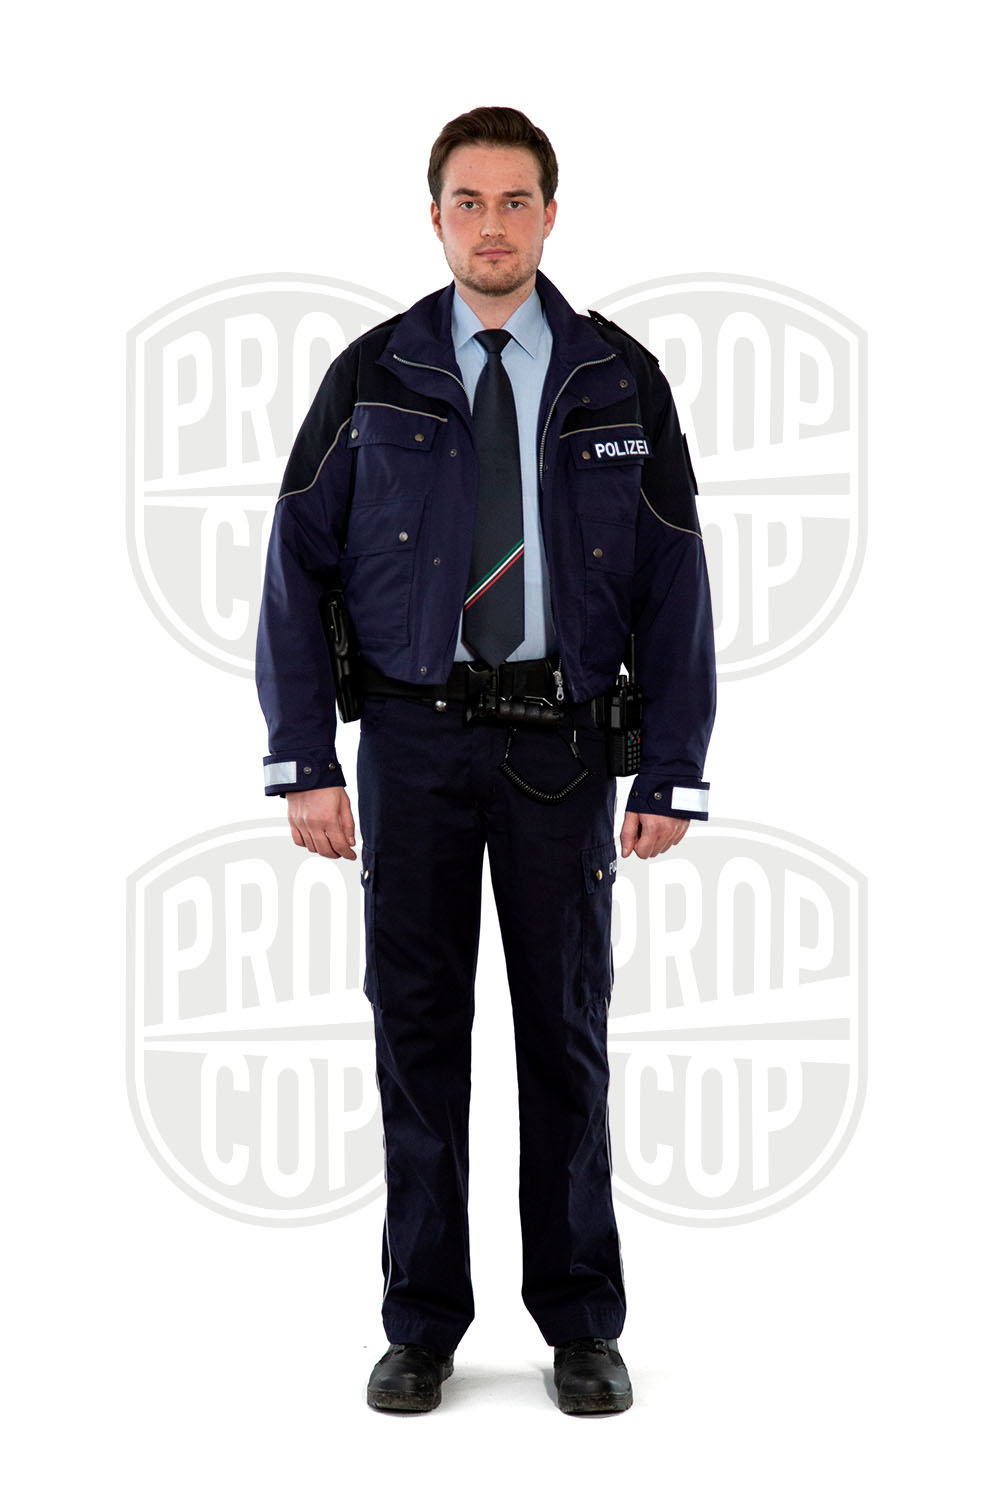 Polizeiuniform NRW mit Krawatte